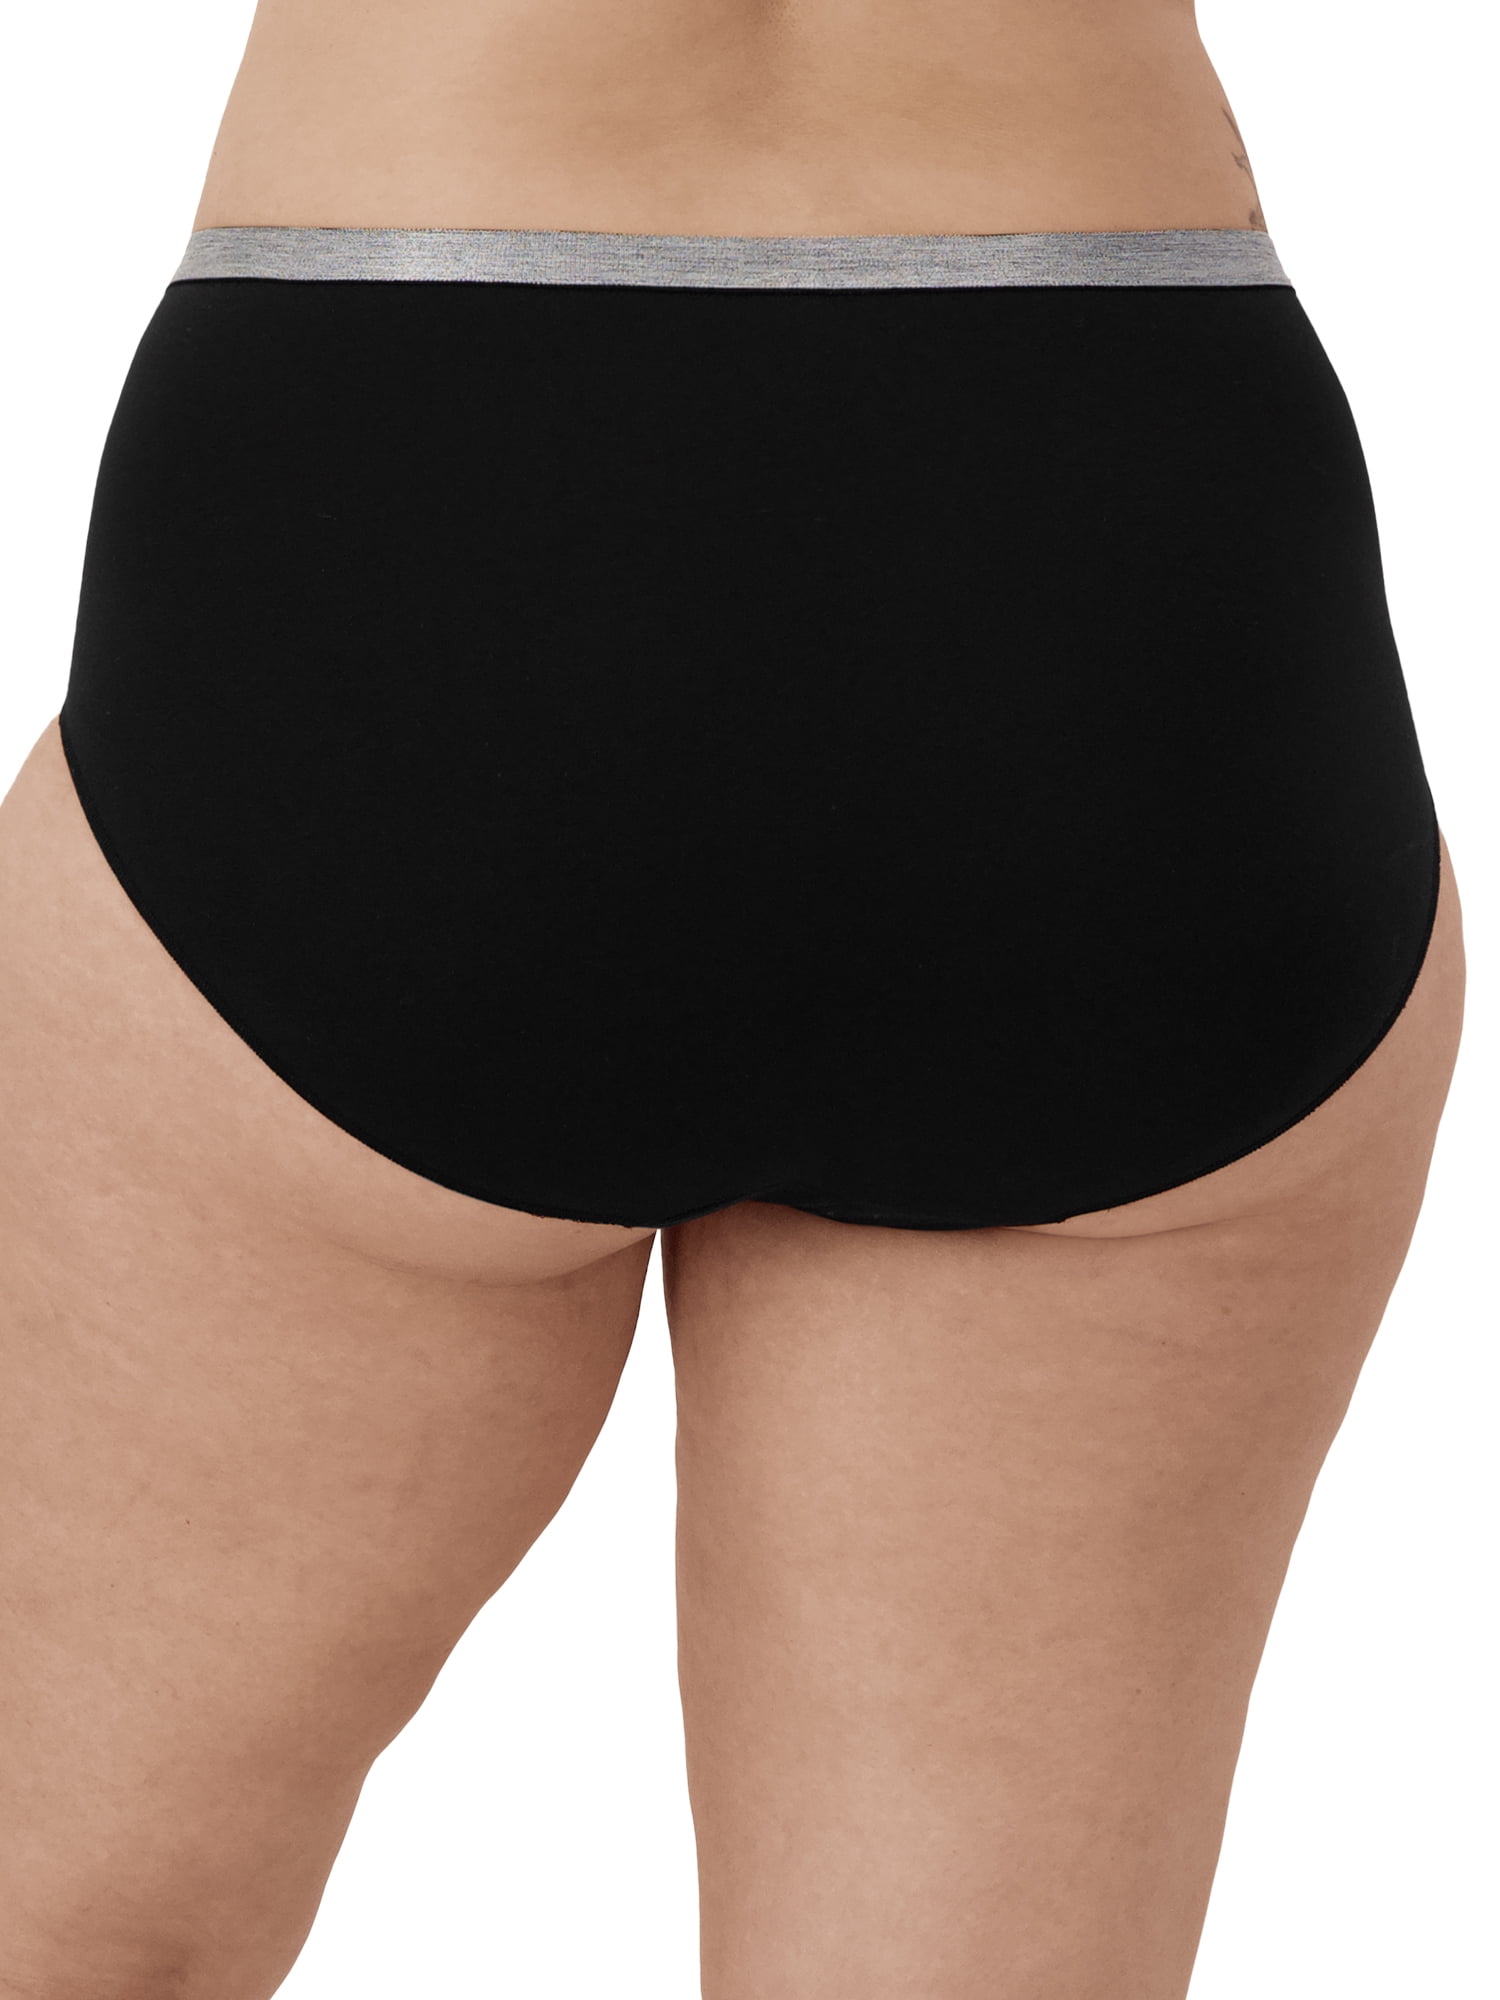 Hanes Just My Size Women's Stretch Brief Underwear, 5-Pack 